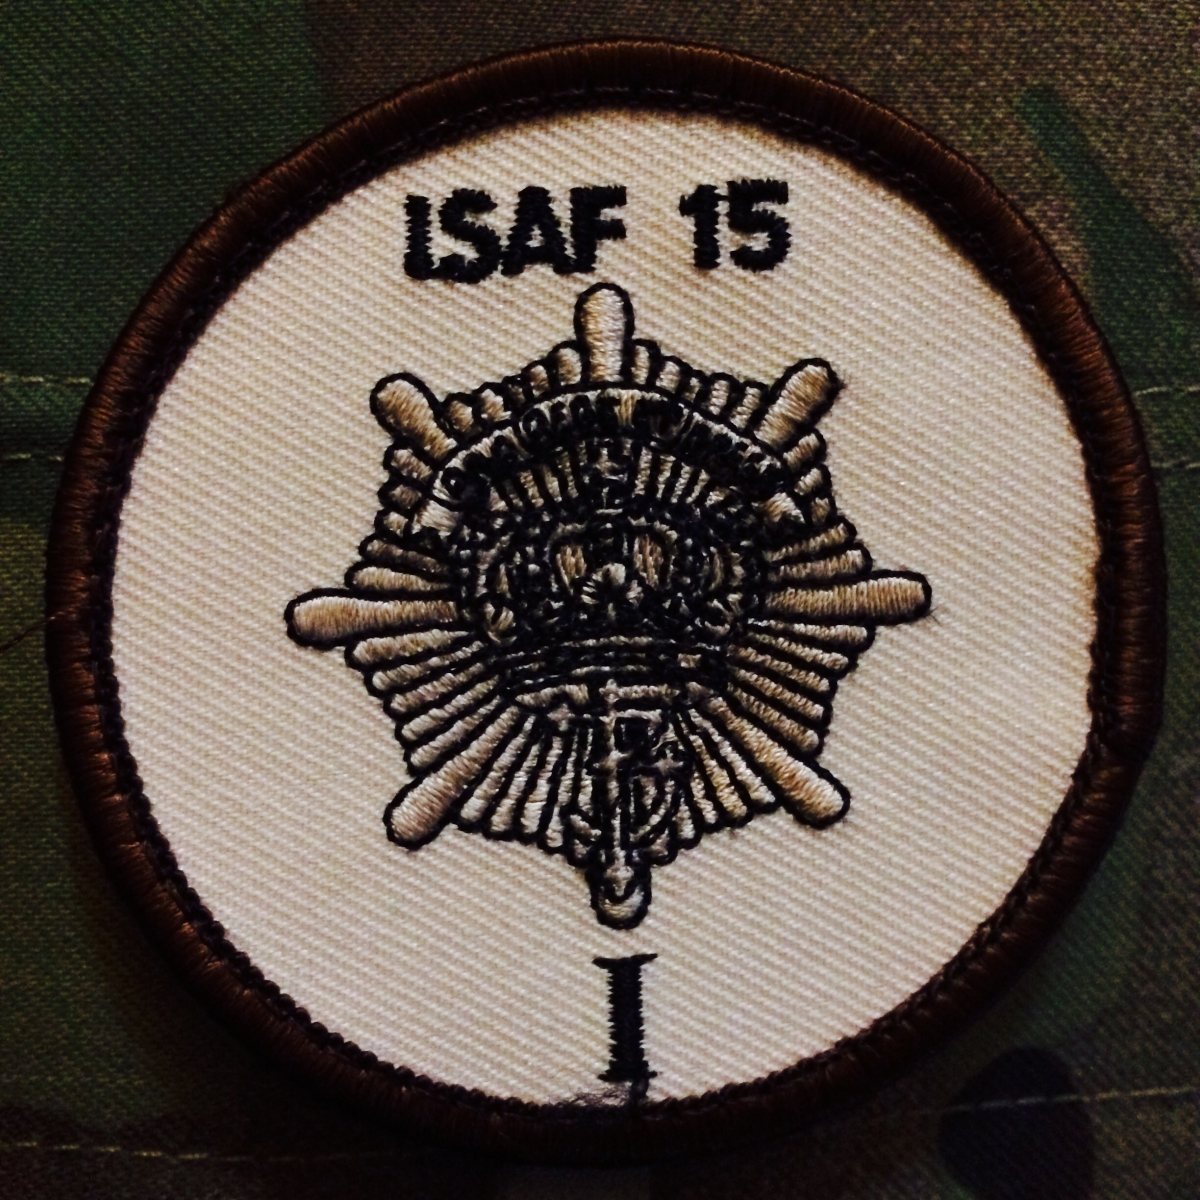 Swedish Army ISAF patch.